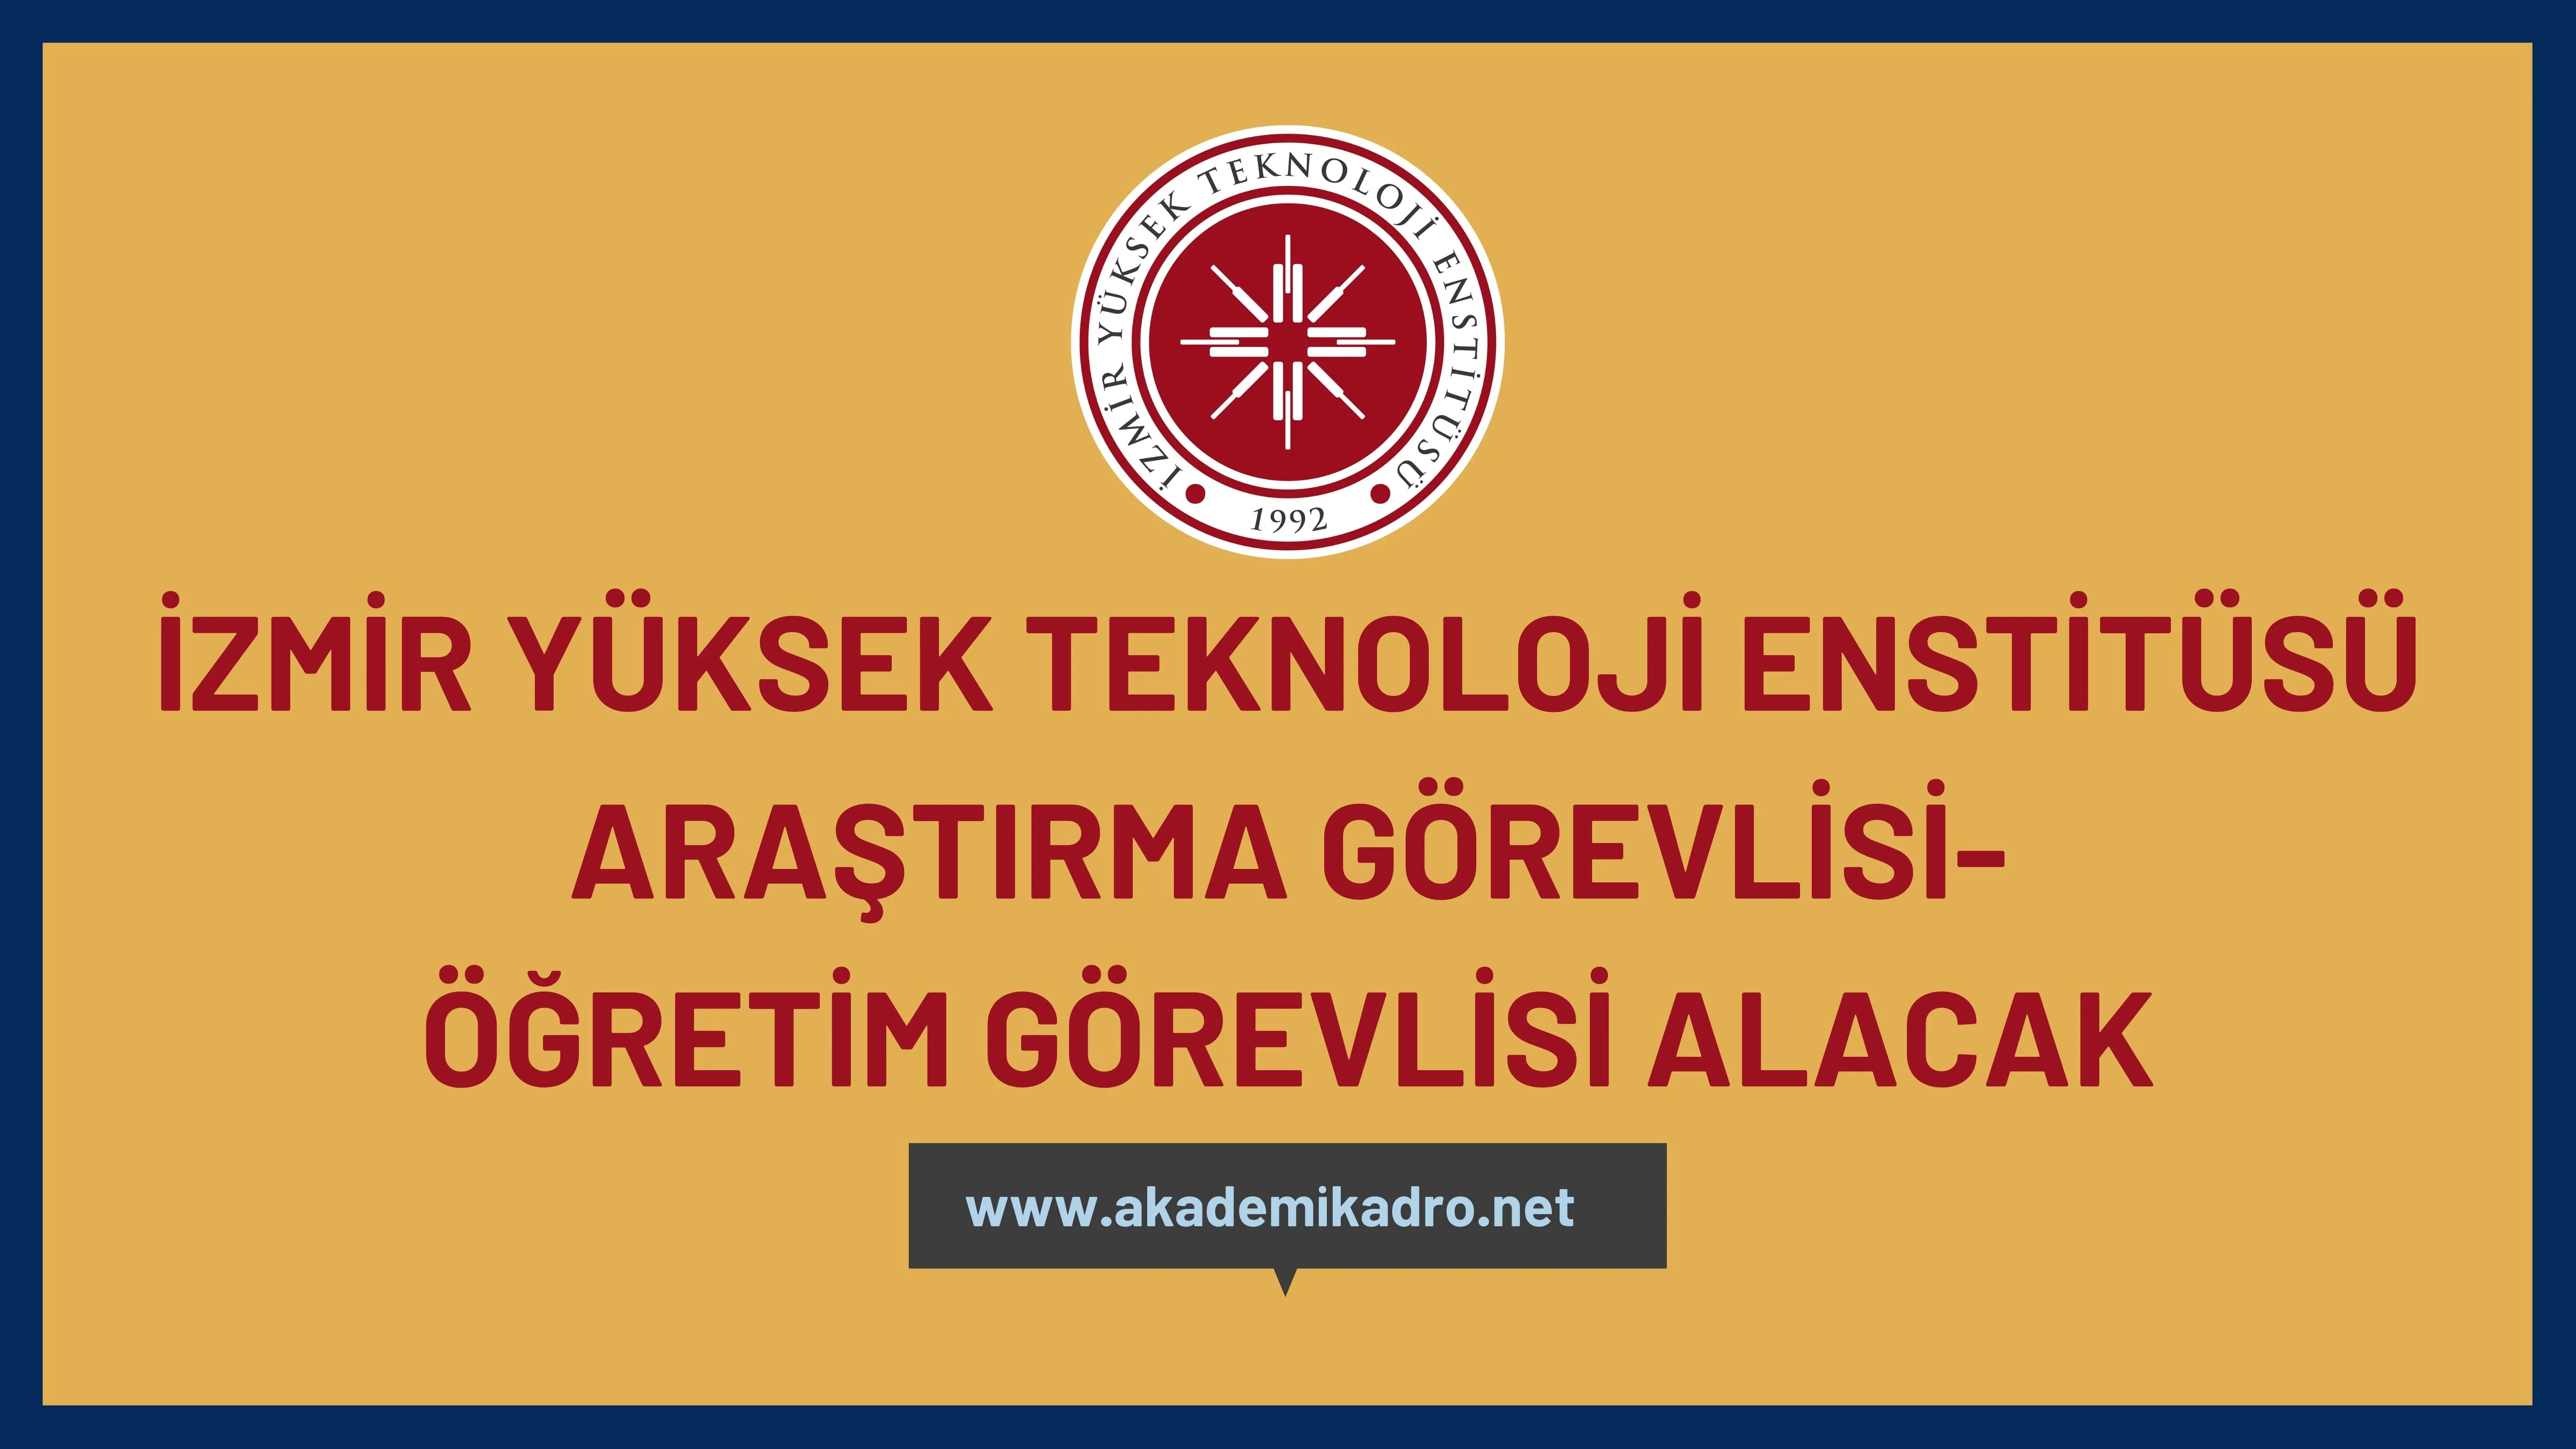 İzmir Yüksek Teknoloji Enstitüsü birçok alandan 36 Araştırma görevlisi ve 3 Öğretim görevlisi alacak. Son başvuru tarihi 17 Kasım 2022.